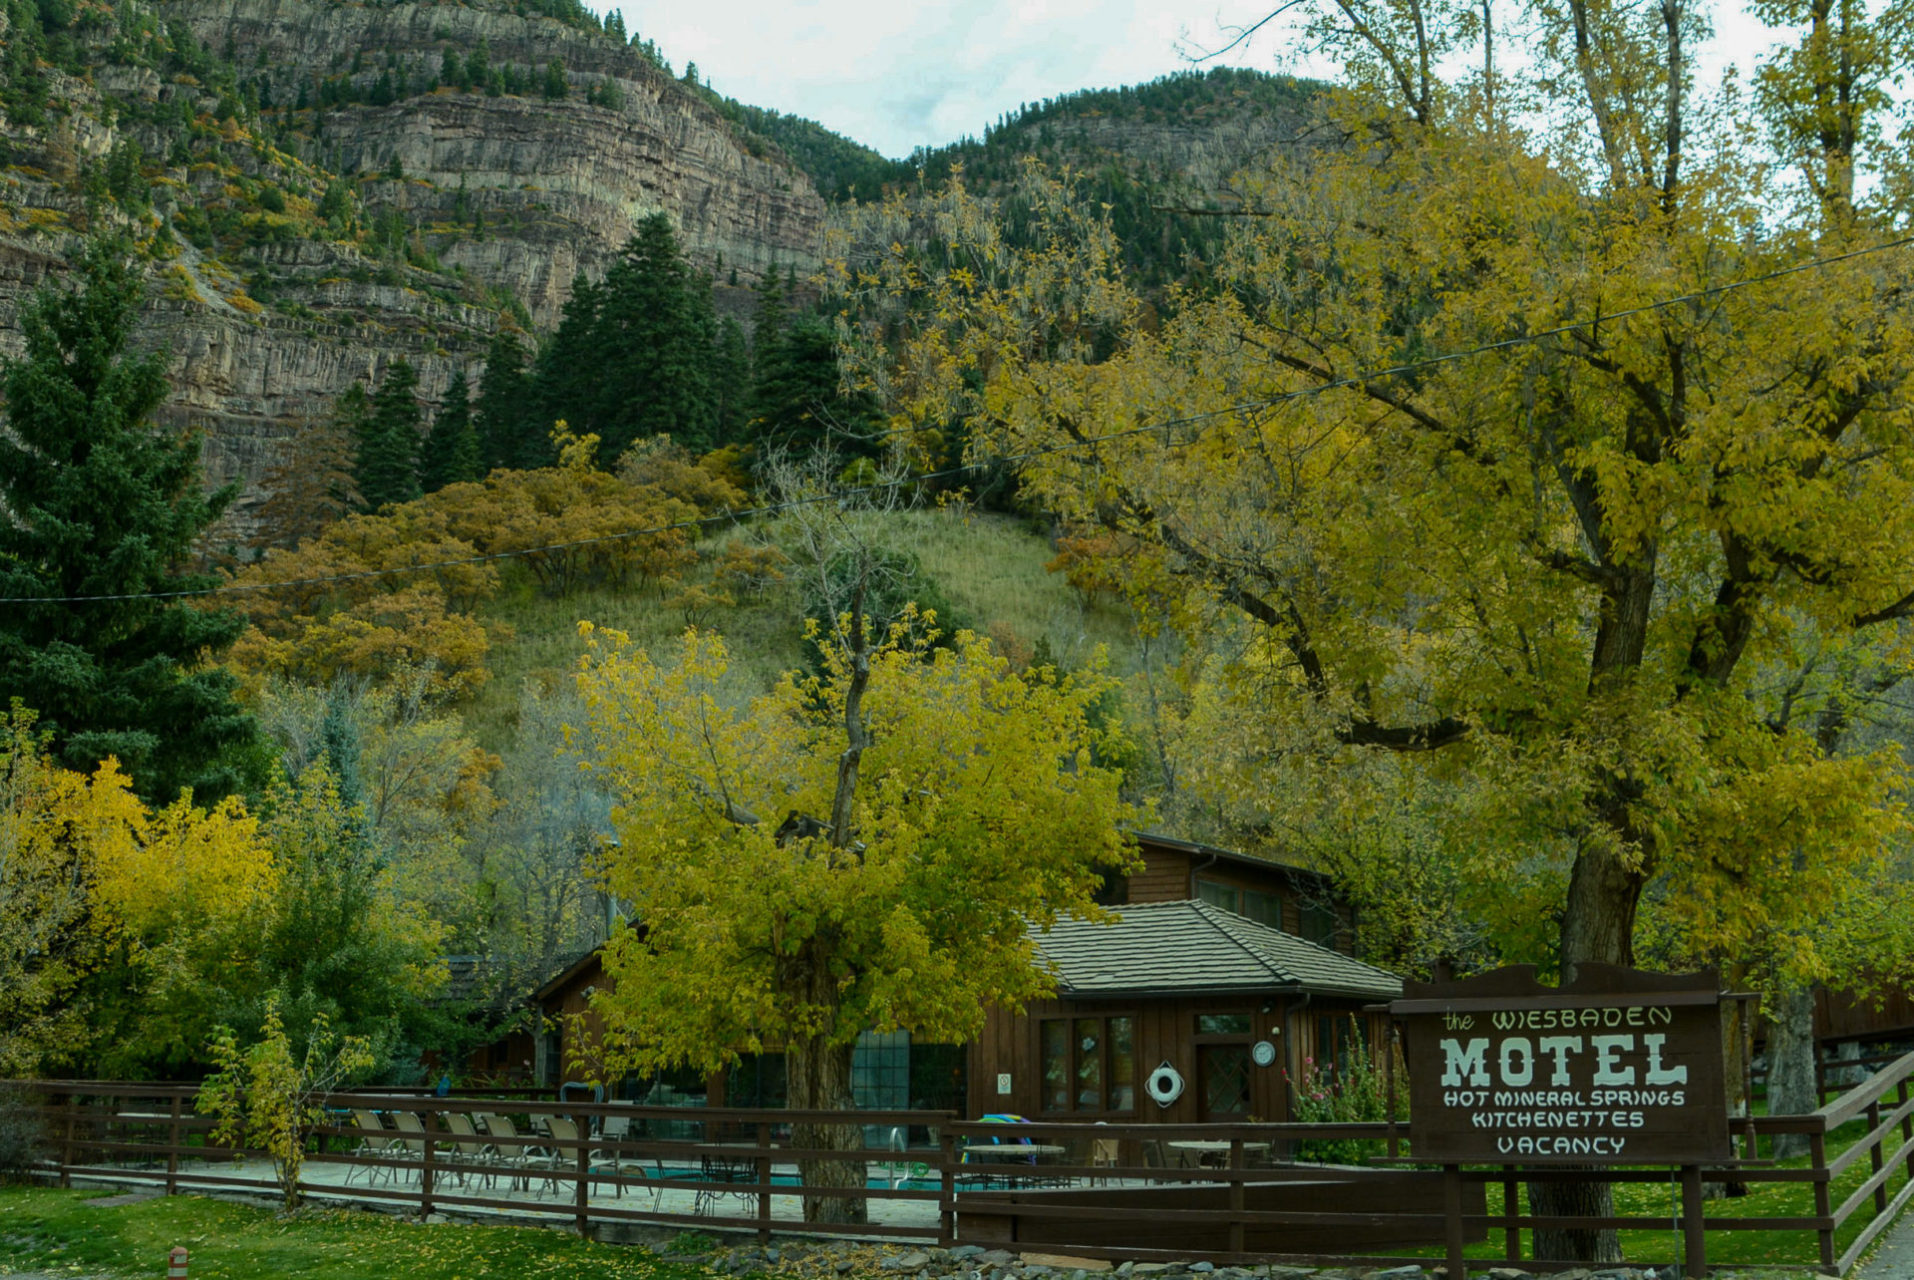 The Wiesbaden Motel mit dazugehörigen heißen Quellen in Colorado